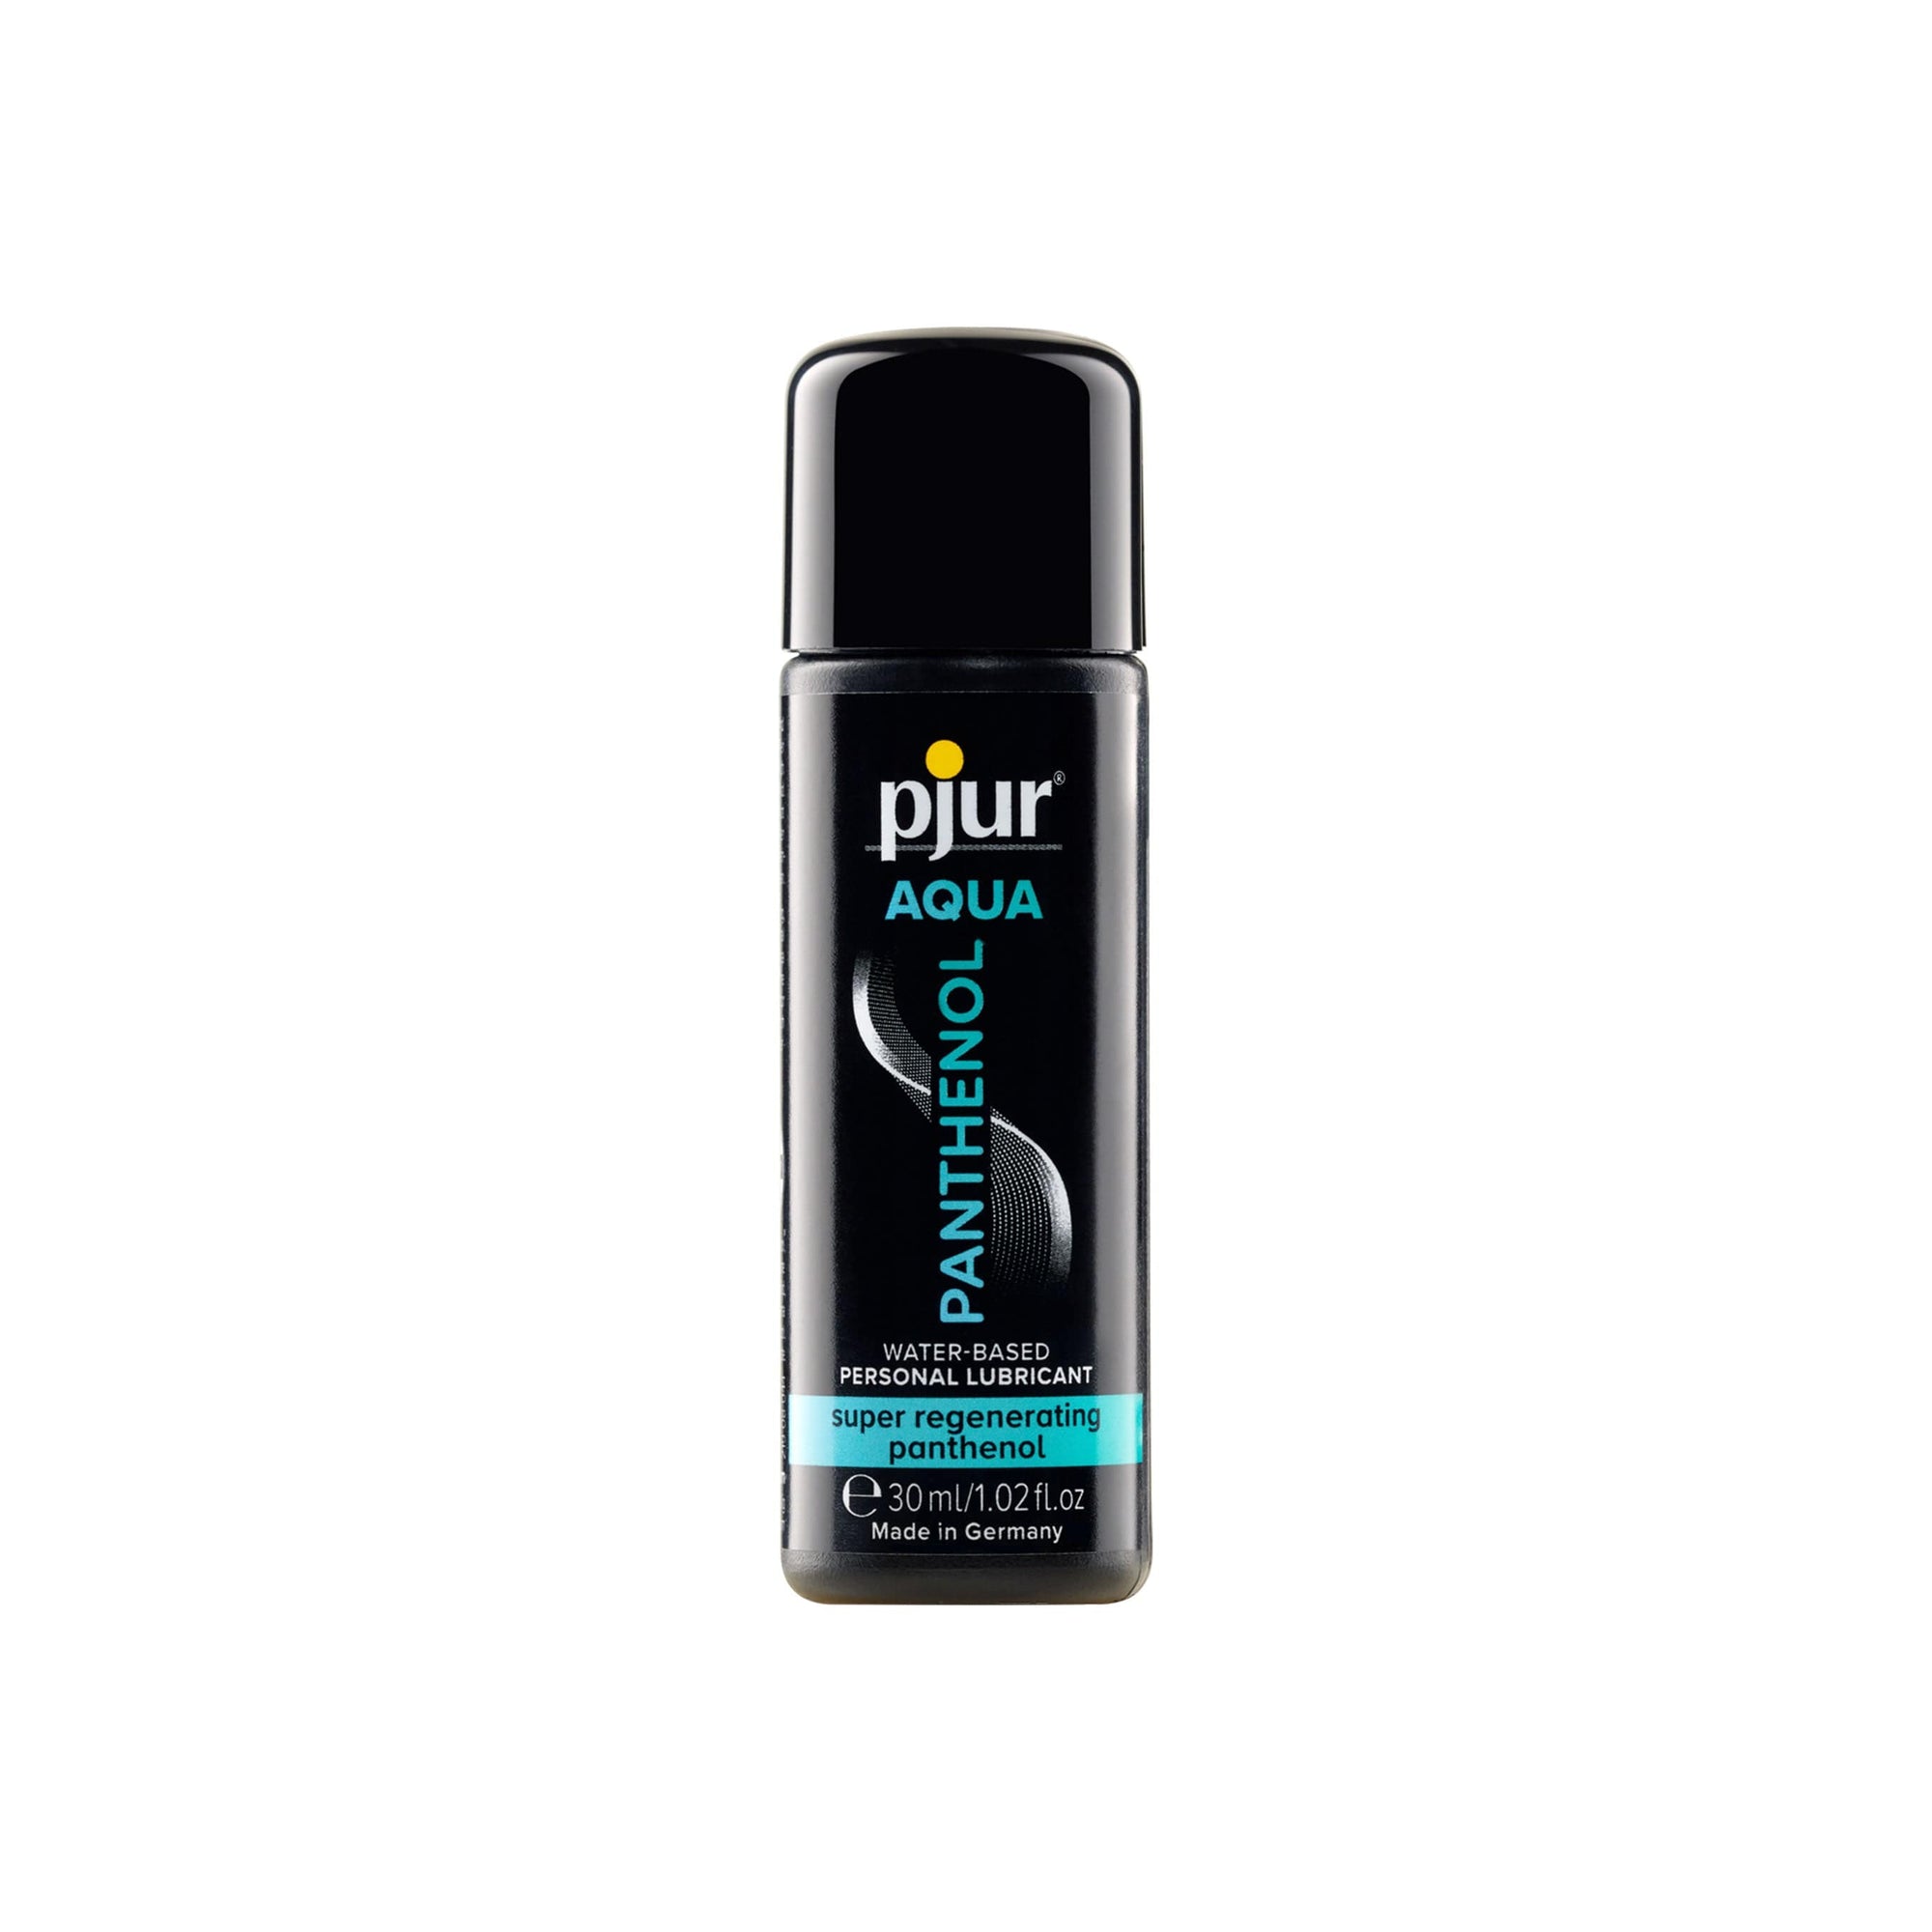 Pjur - Aqua Panthenol Water Based Personal Lubricant 30ml Lube (Water Based) 827160113827 CherryAffairs